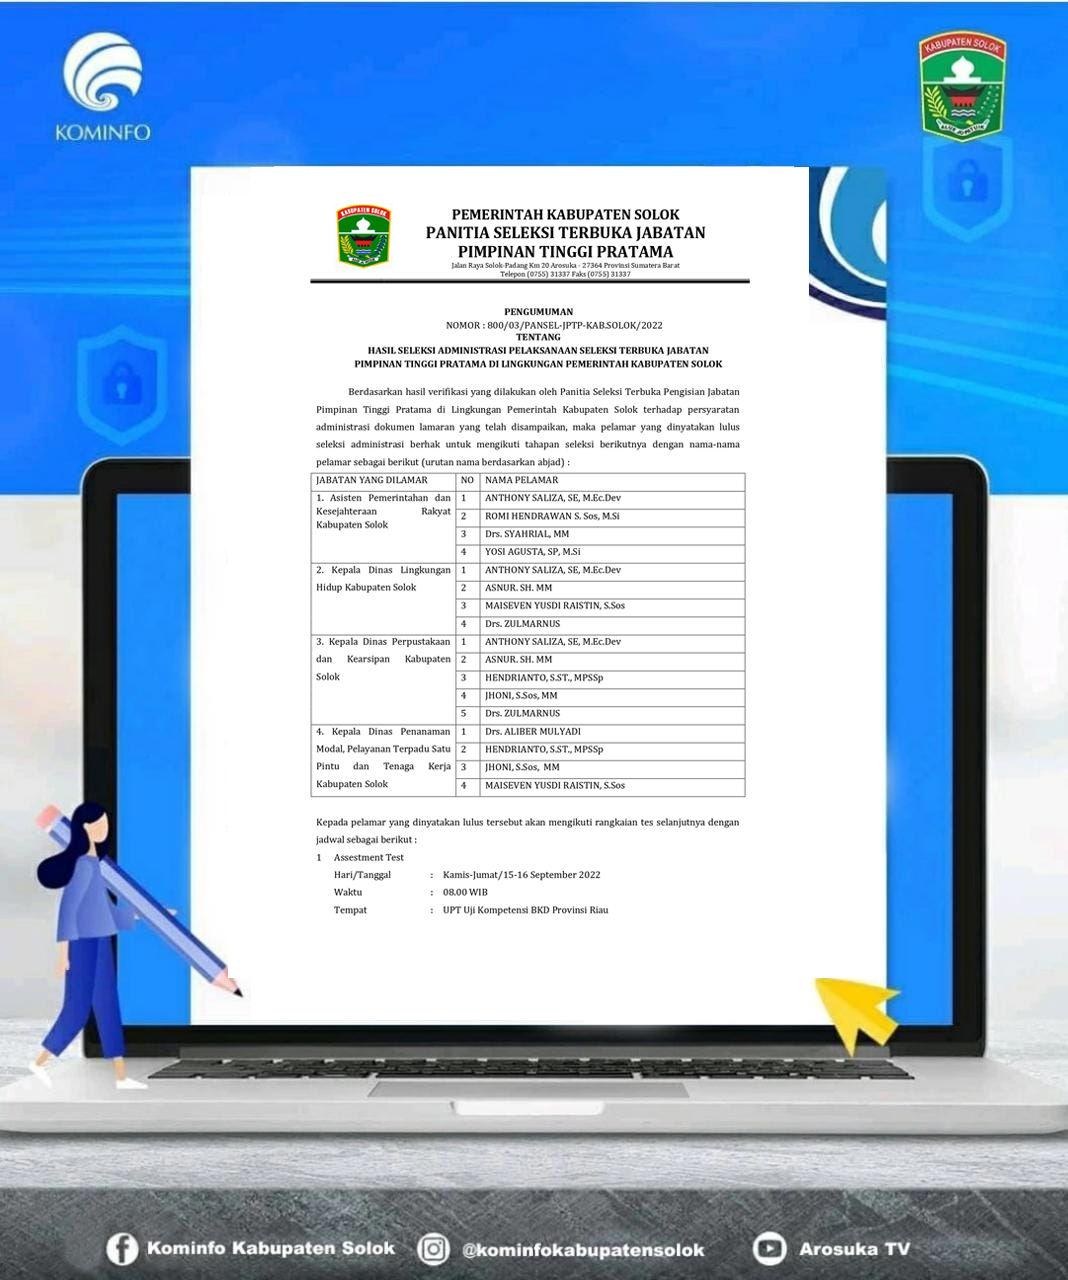 Hasil Seleksi Administrasi Pelaksanaan Seleksi Terbuka Jabatan Pimpinan Tinggi Pratama Di Lingkungan Pemerintah Kabupaten Solok